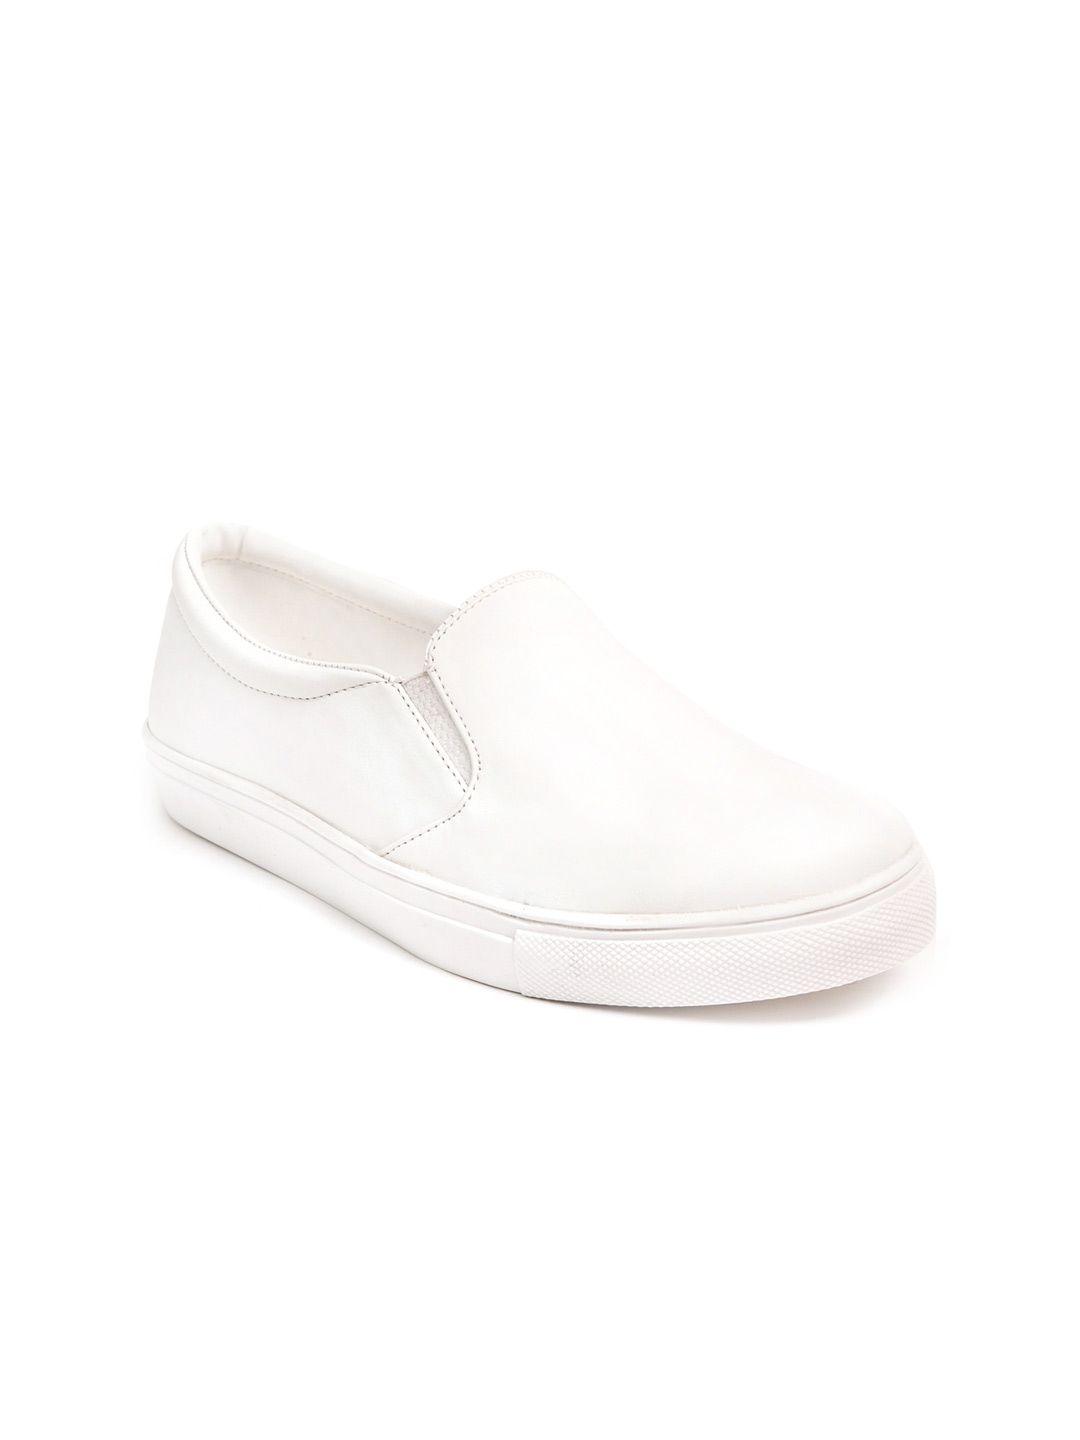 marc loire women white slip-on sneakers